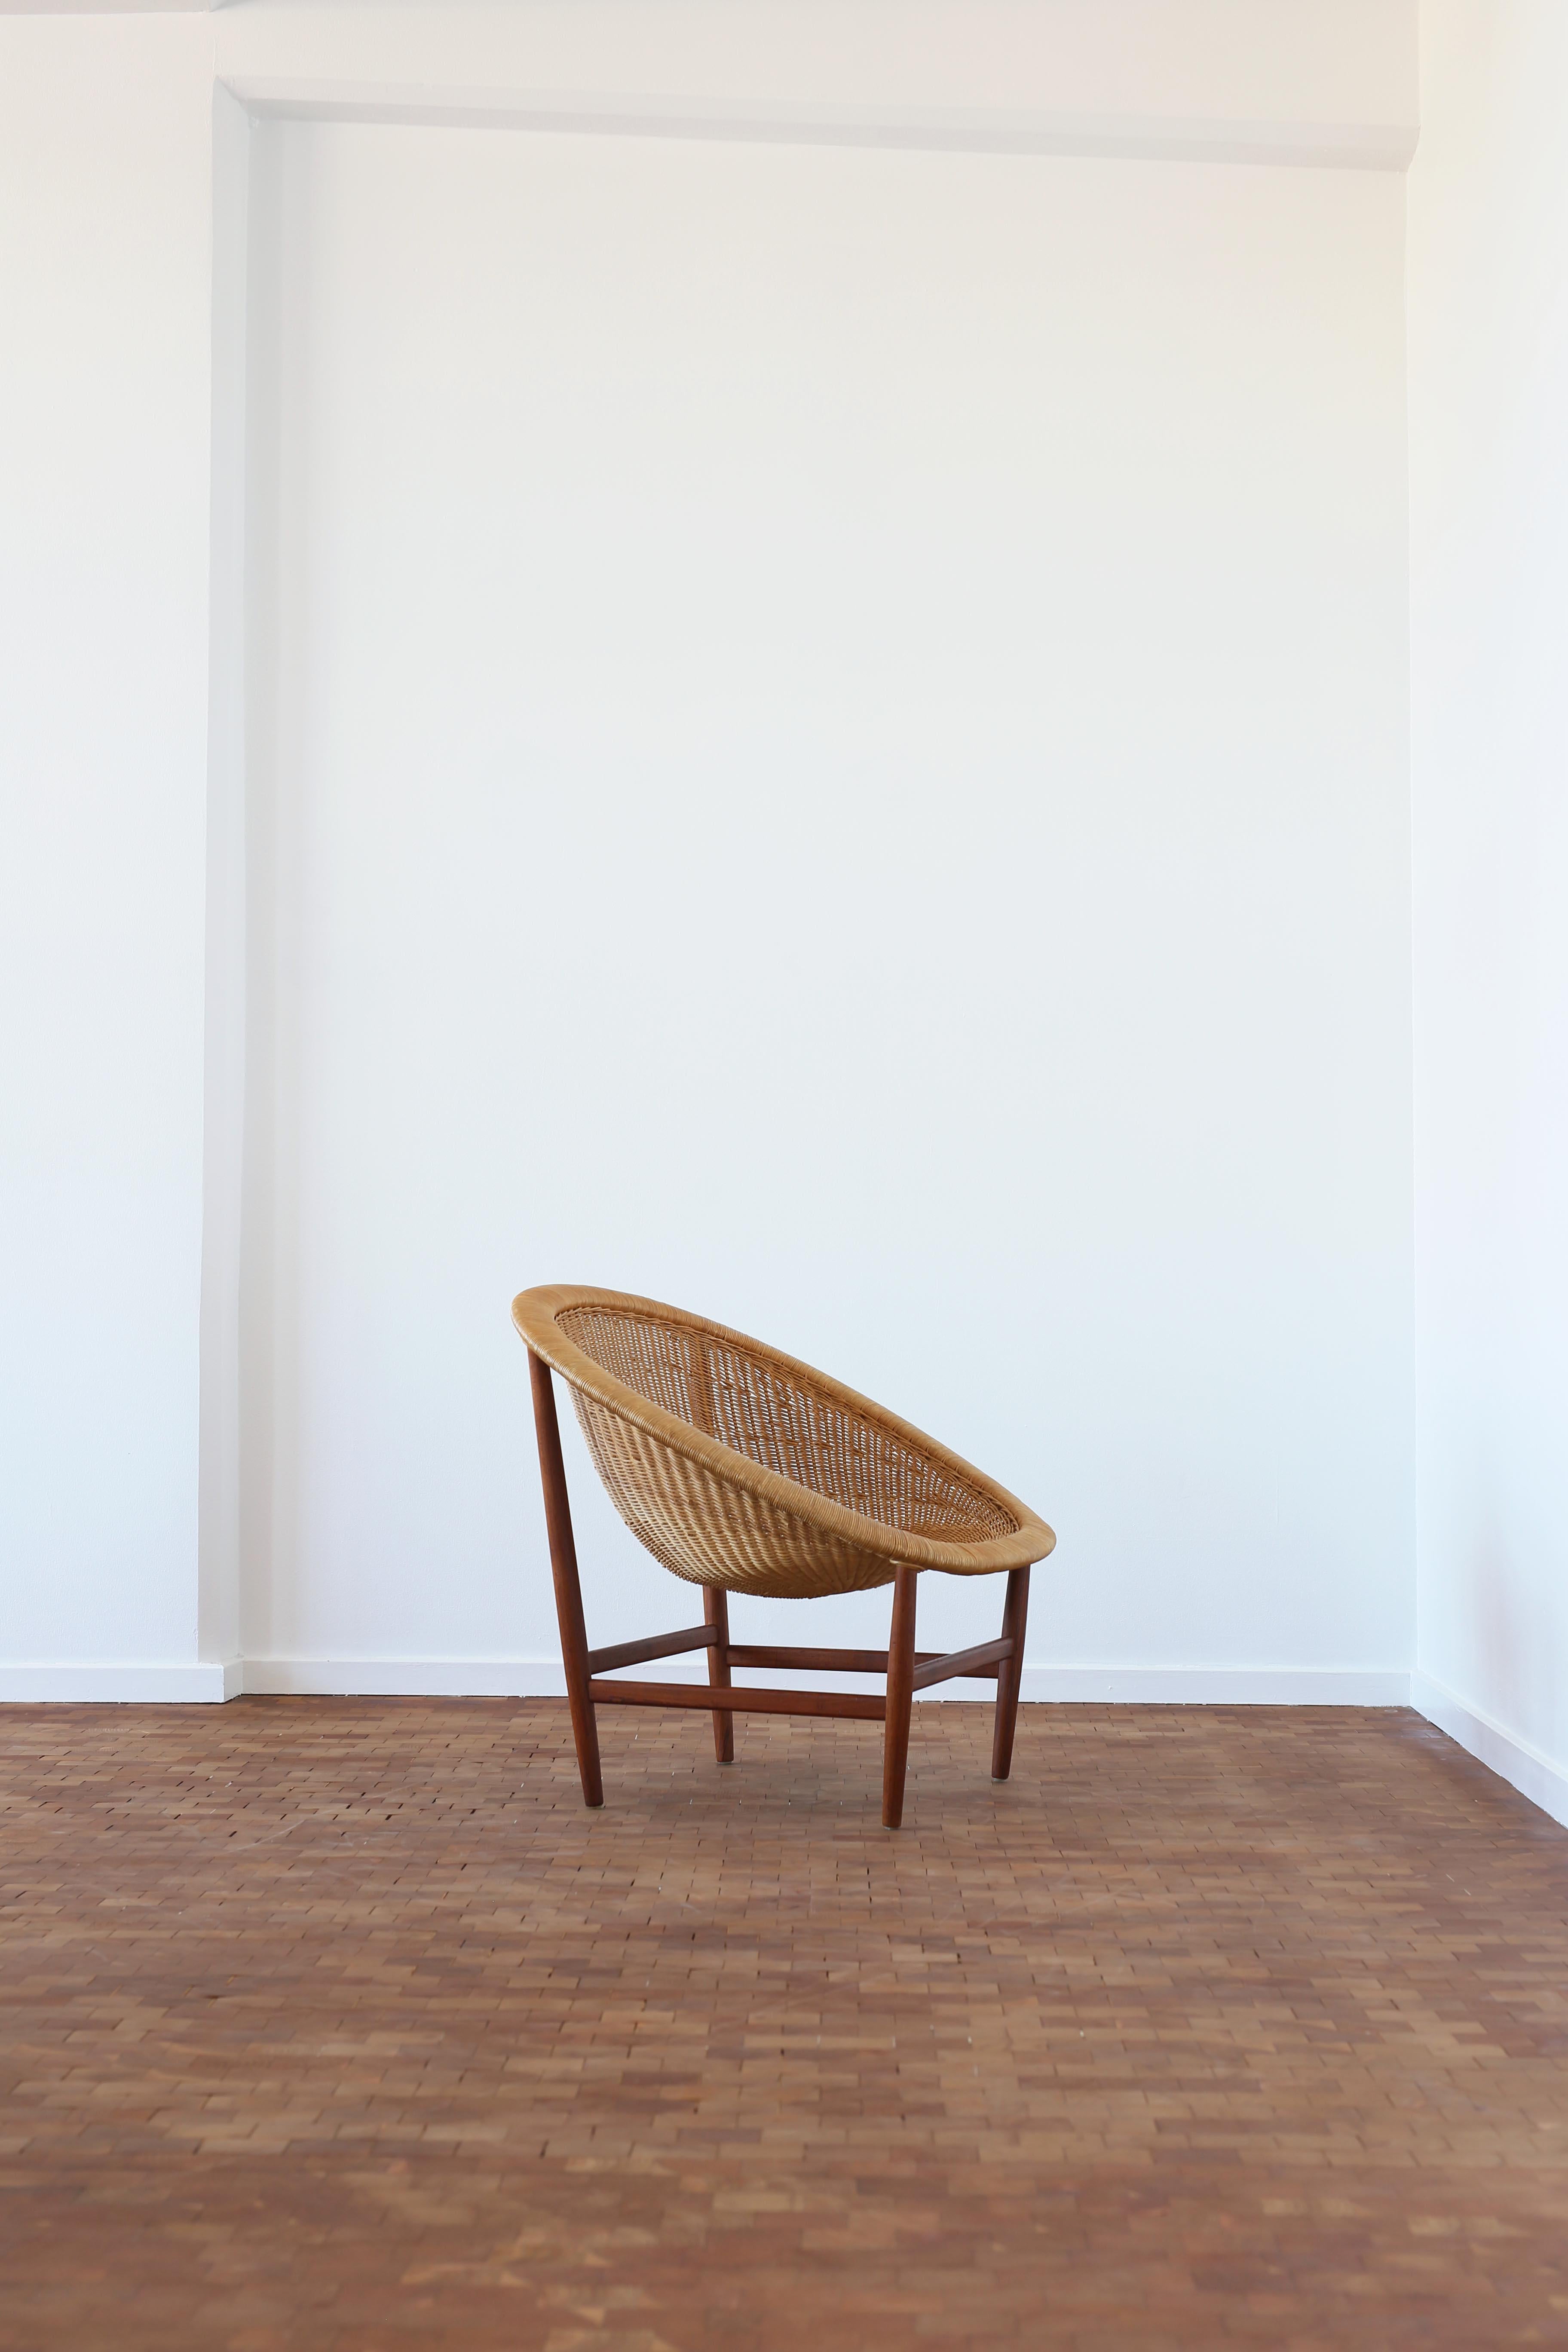 Erstausgabe Nanna Ditzel 'Basket' Sessel mit Gestell aus Teakholz, gepolstert mit Rattan.  Entworfen von Nanna Ditzel für Ludvig Pontoppidan, Dänemark, 1950er Jahre, mit Herstellerzeichen. 

Sehr guter Originalzustand. 